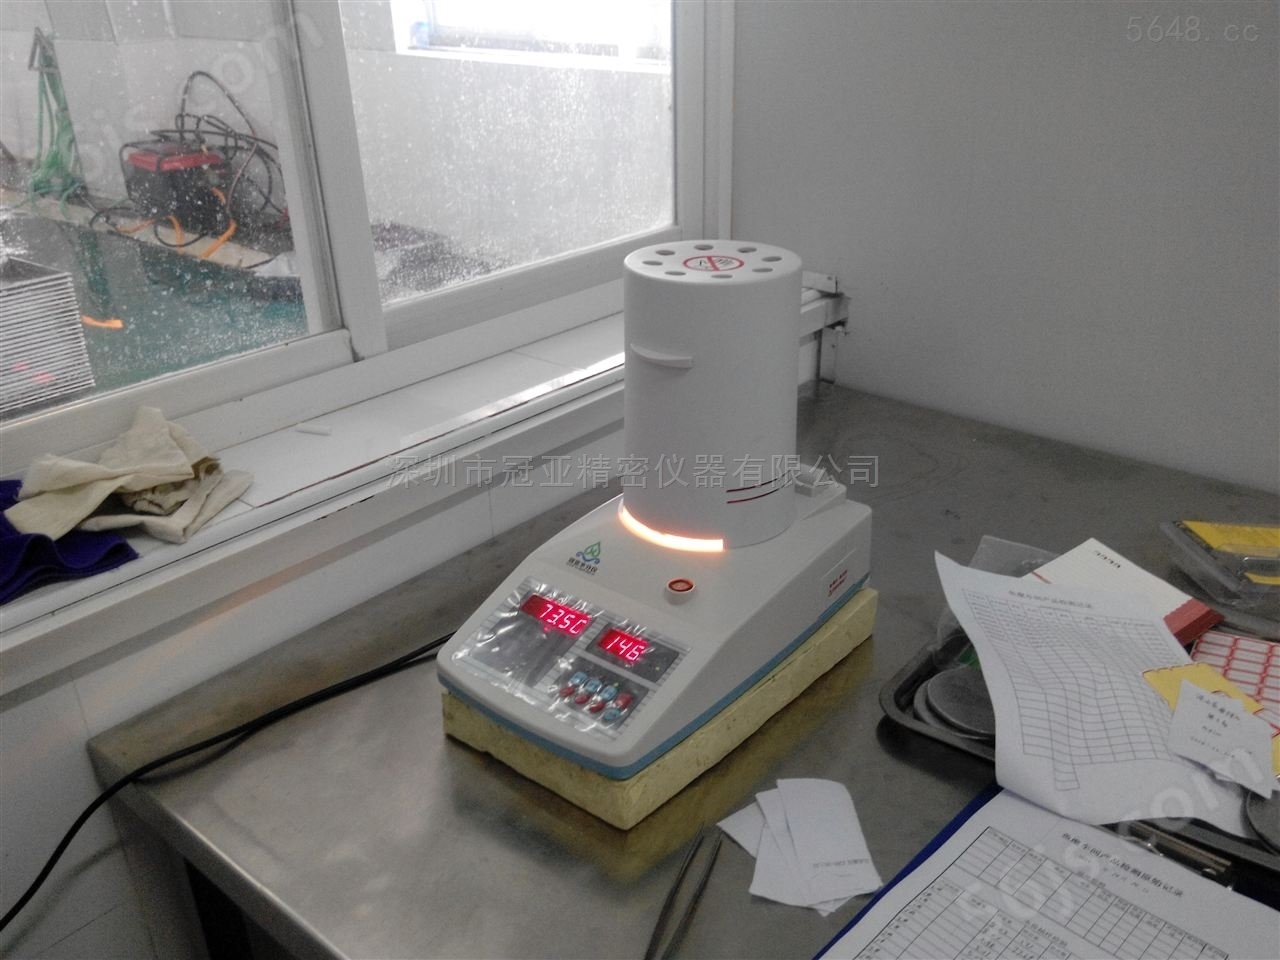 药材水分测定仪标准用法及参数